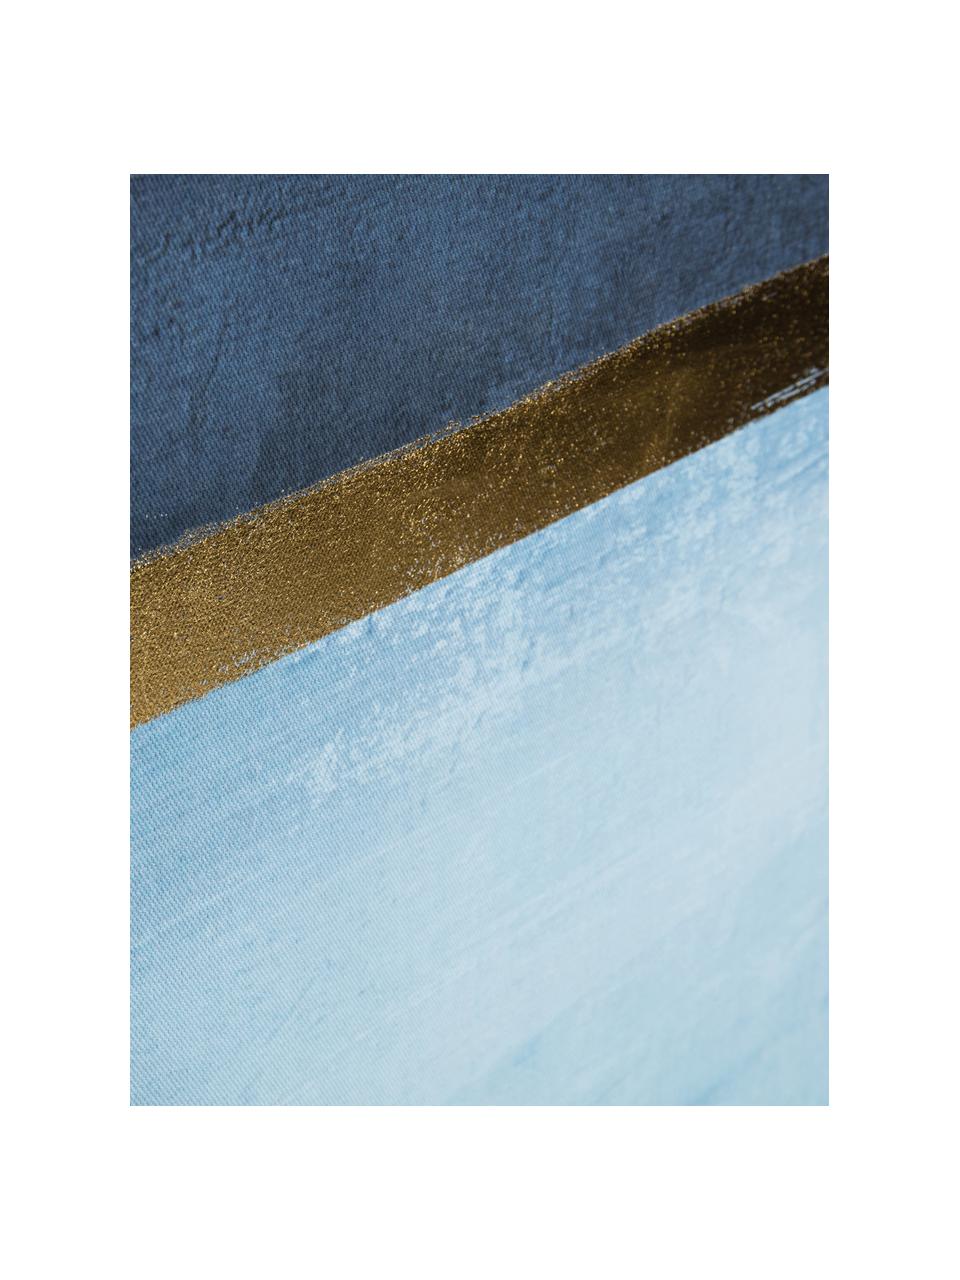 Impression sur toile encadrée Wrigley, Tons bleus, couleur dorée, larg. 60 x haut. 90 cm